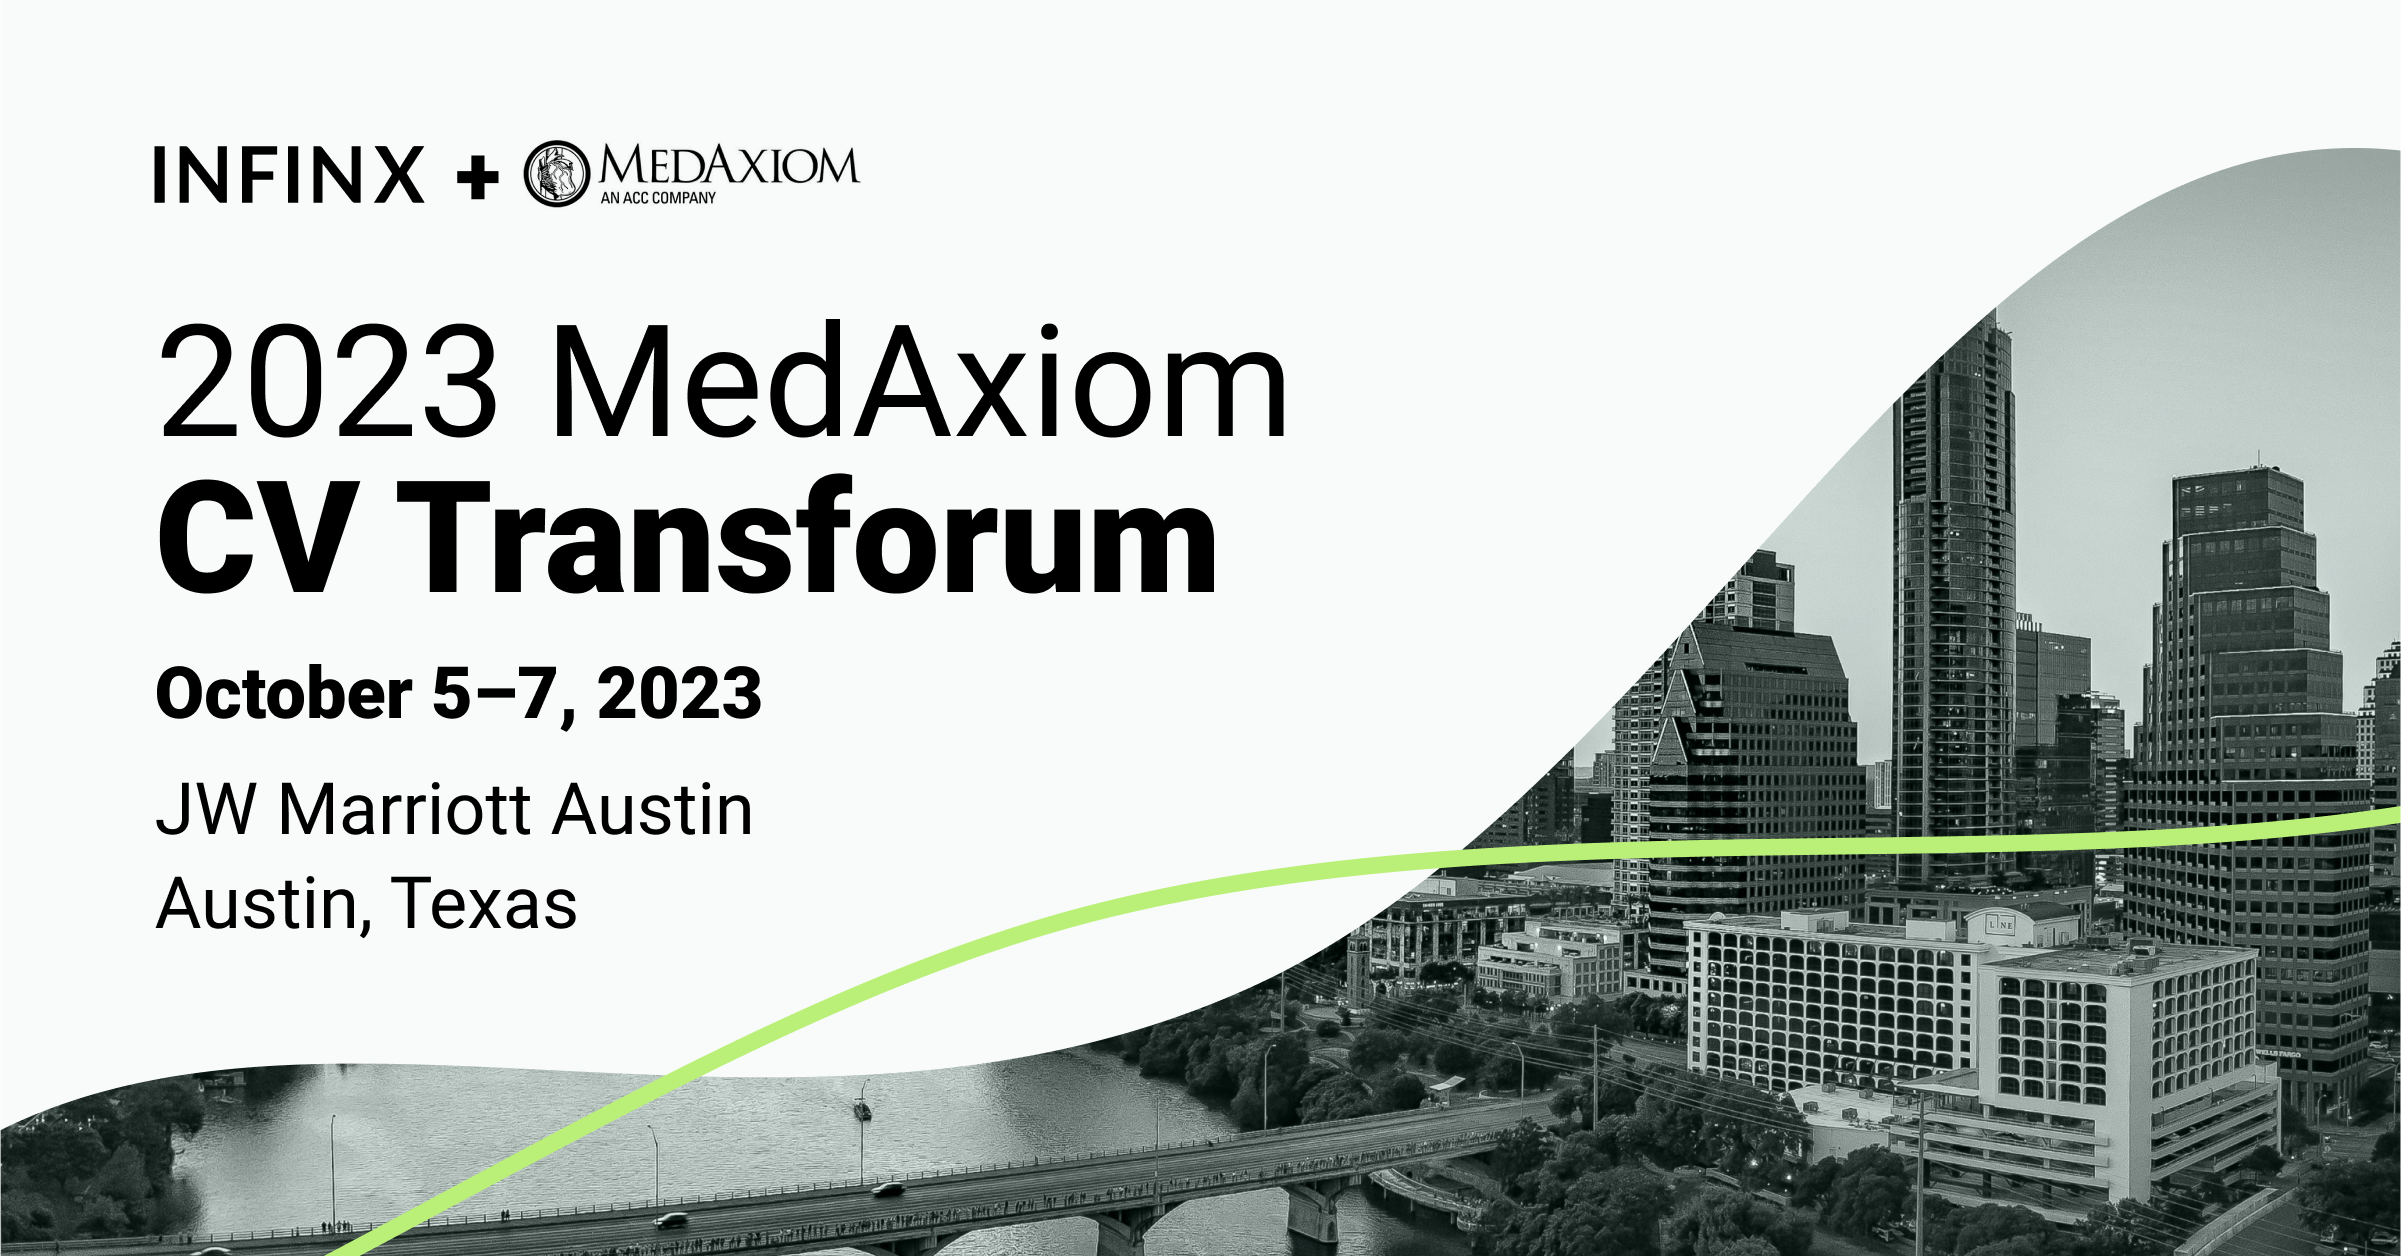 Infinx - Tradeshow Event - 2023 MedAxiom CV Transforum